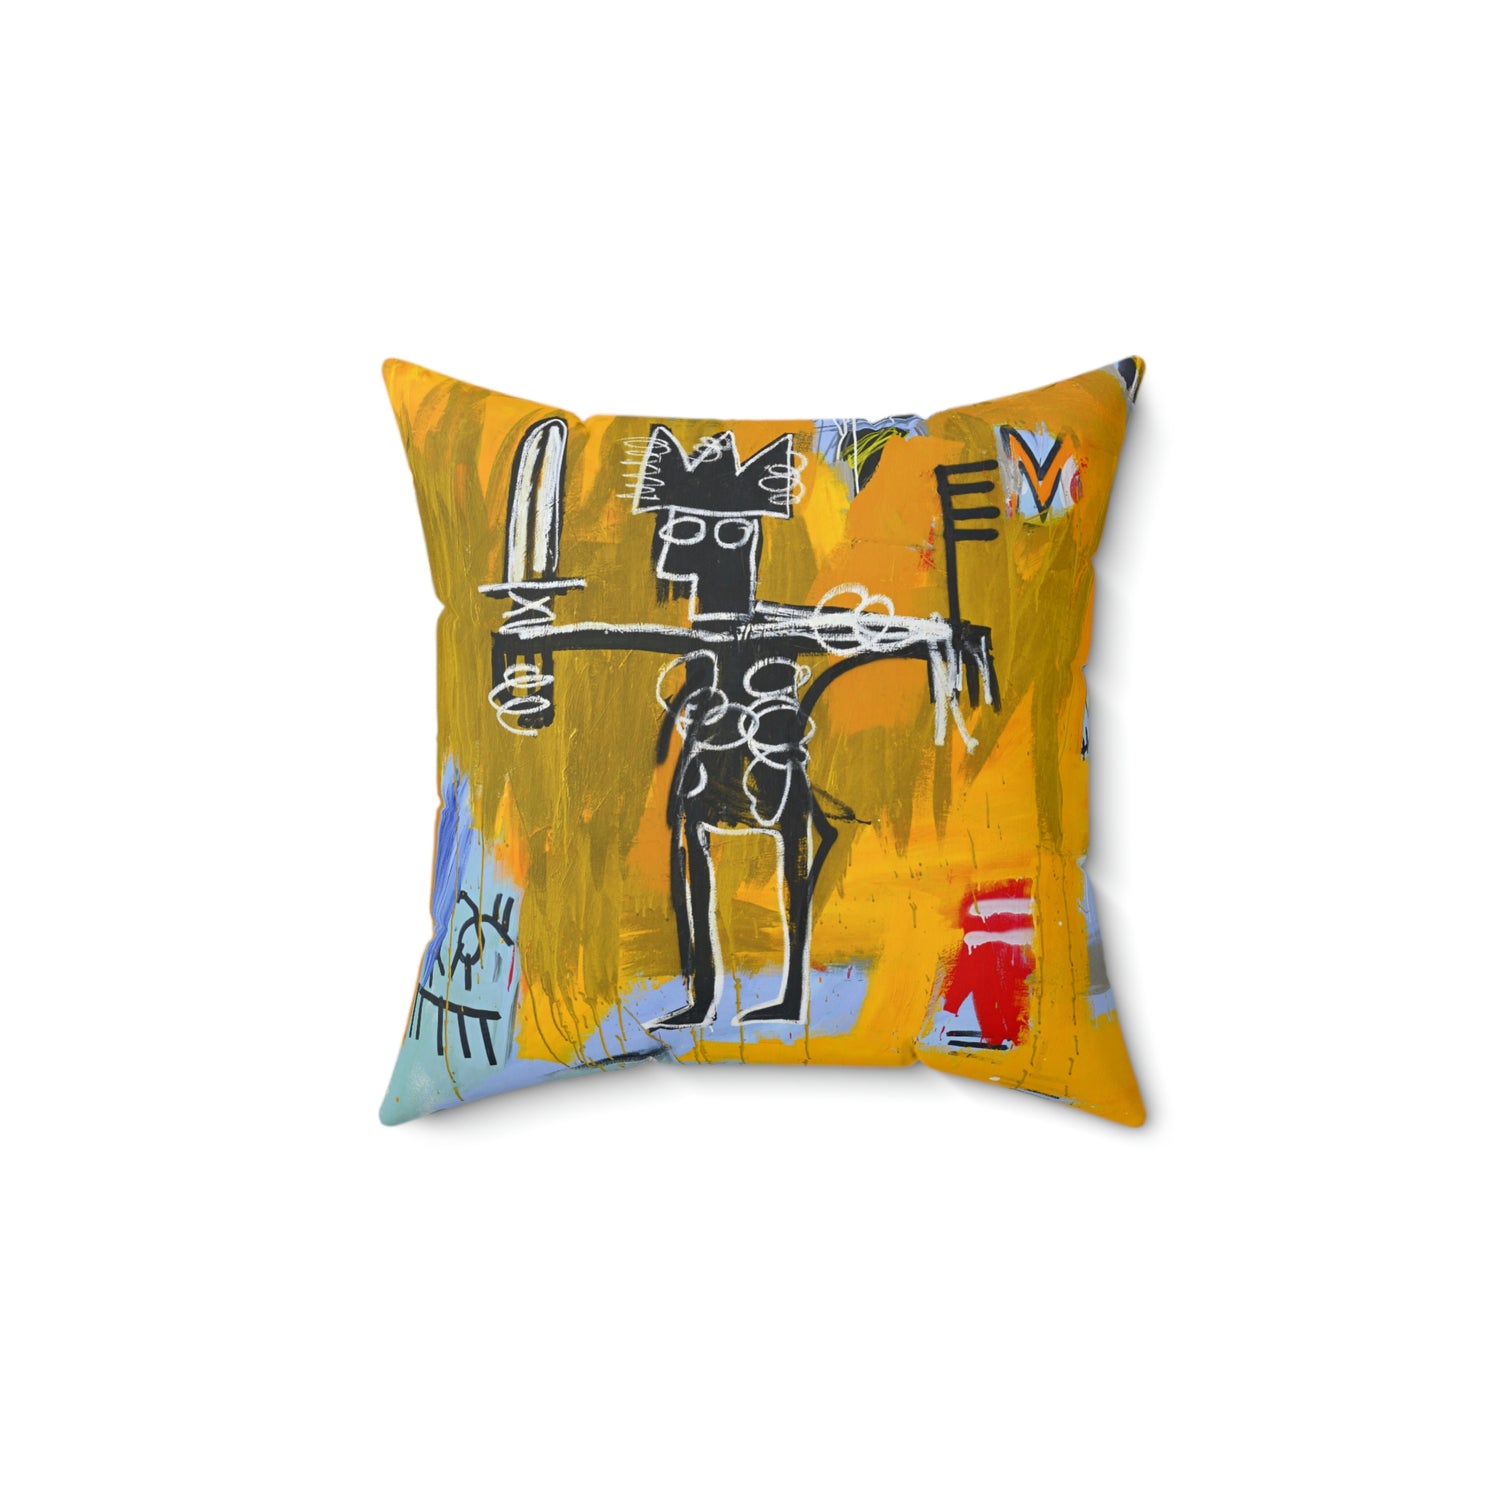 Jean-Michel Basquiat "Julius Caesar on Gold" Artwork Square Throw Pillow